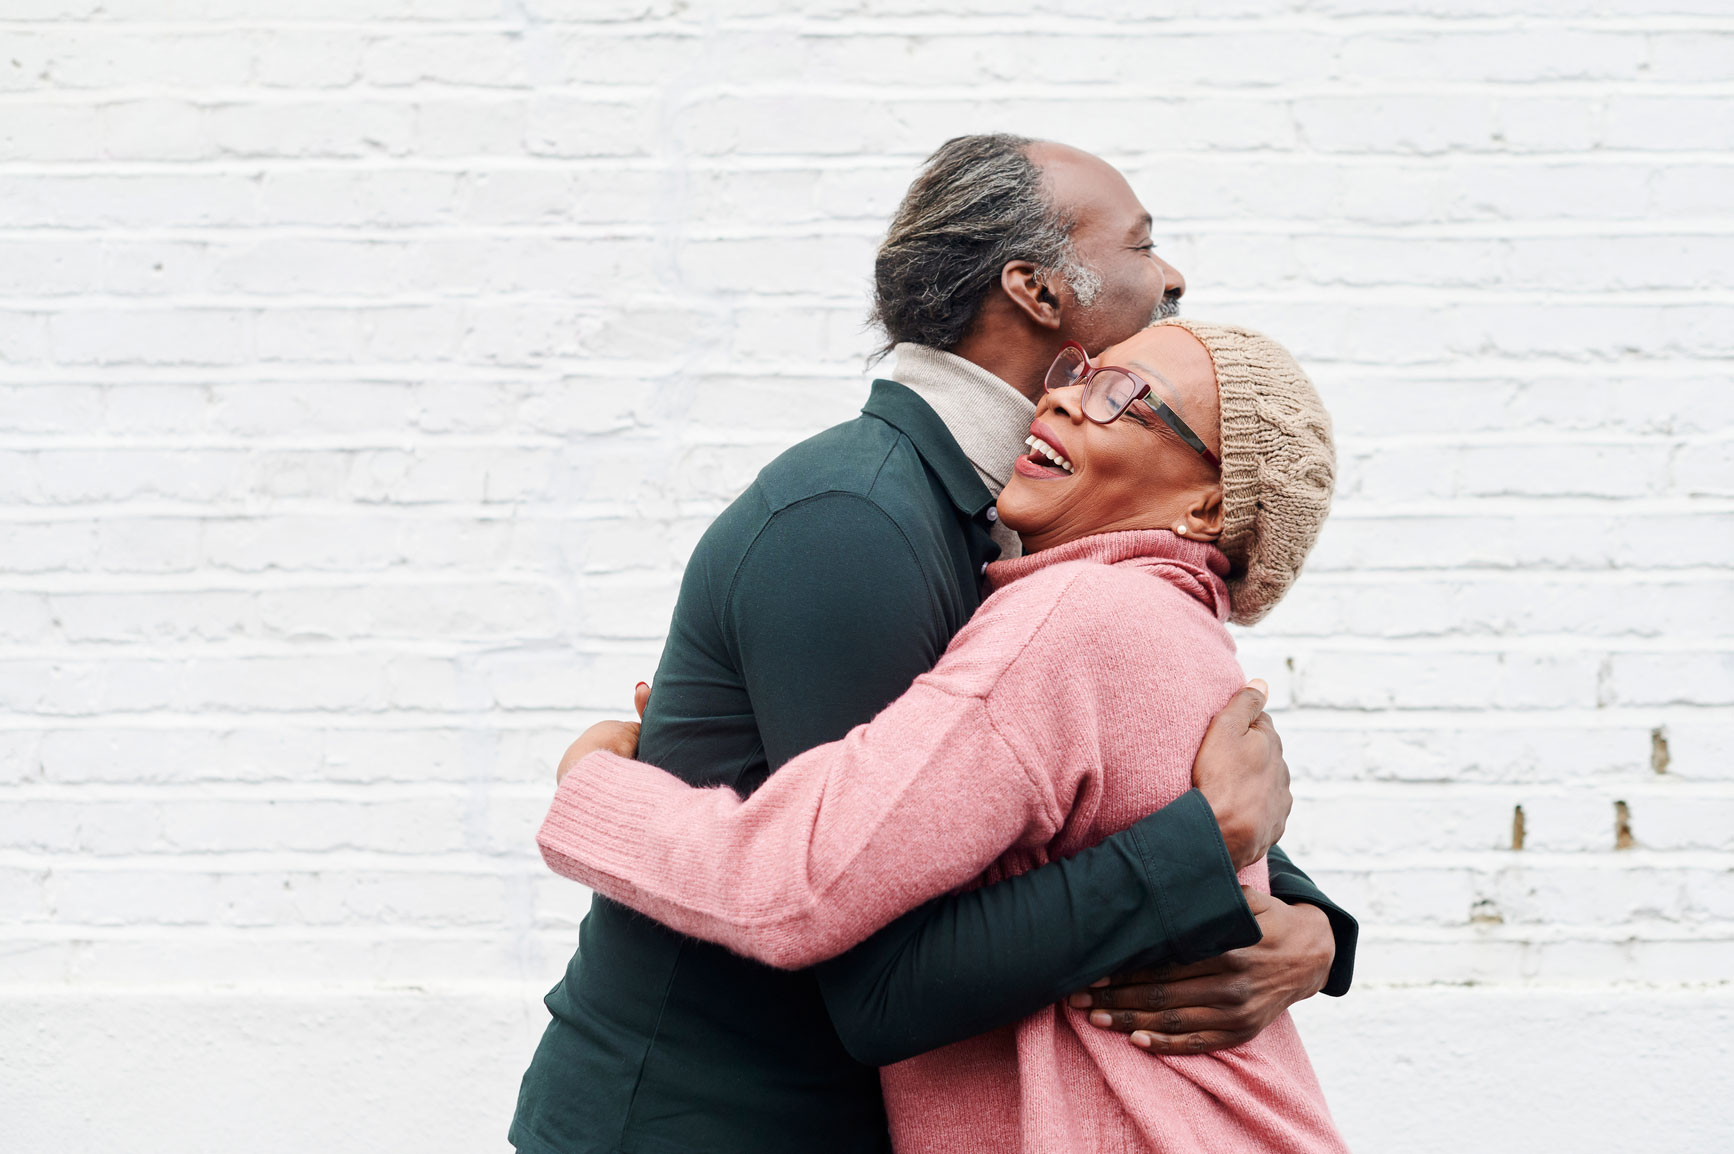 A couple shares a big, warm hug